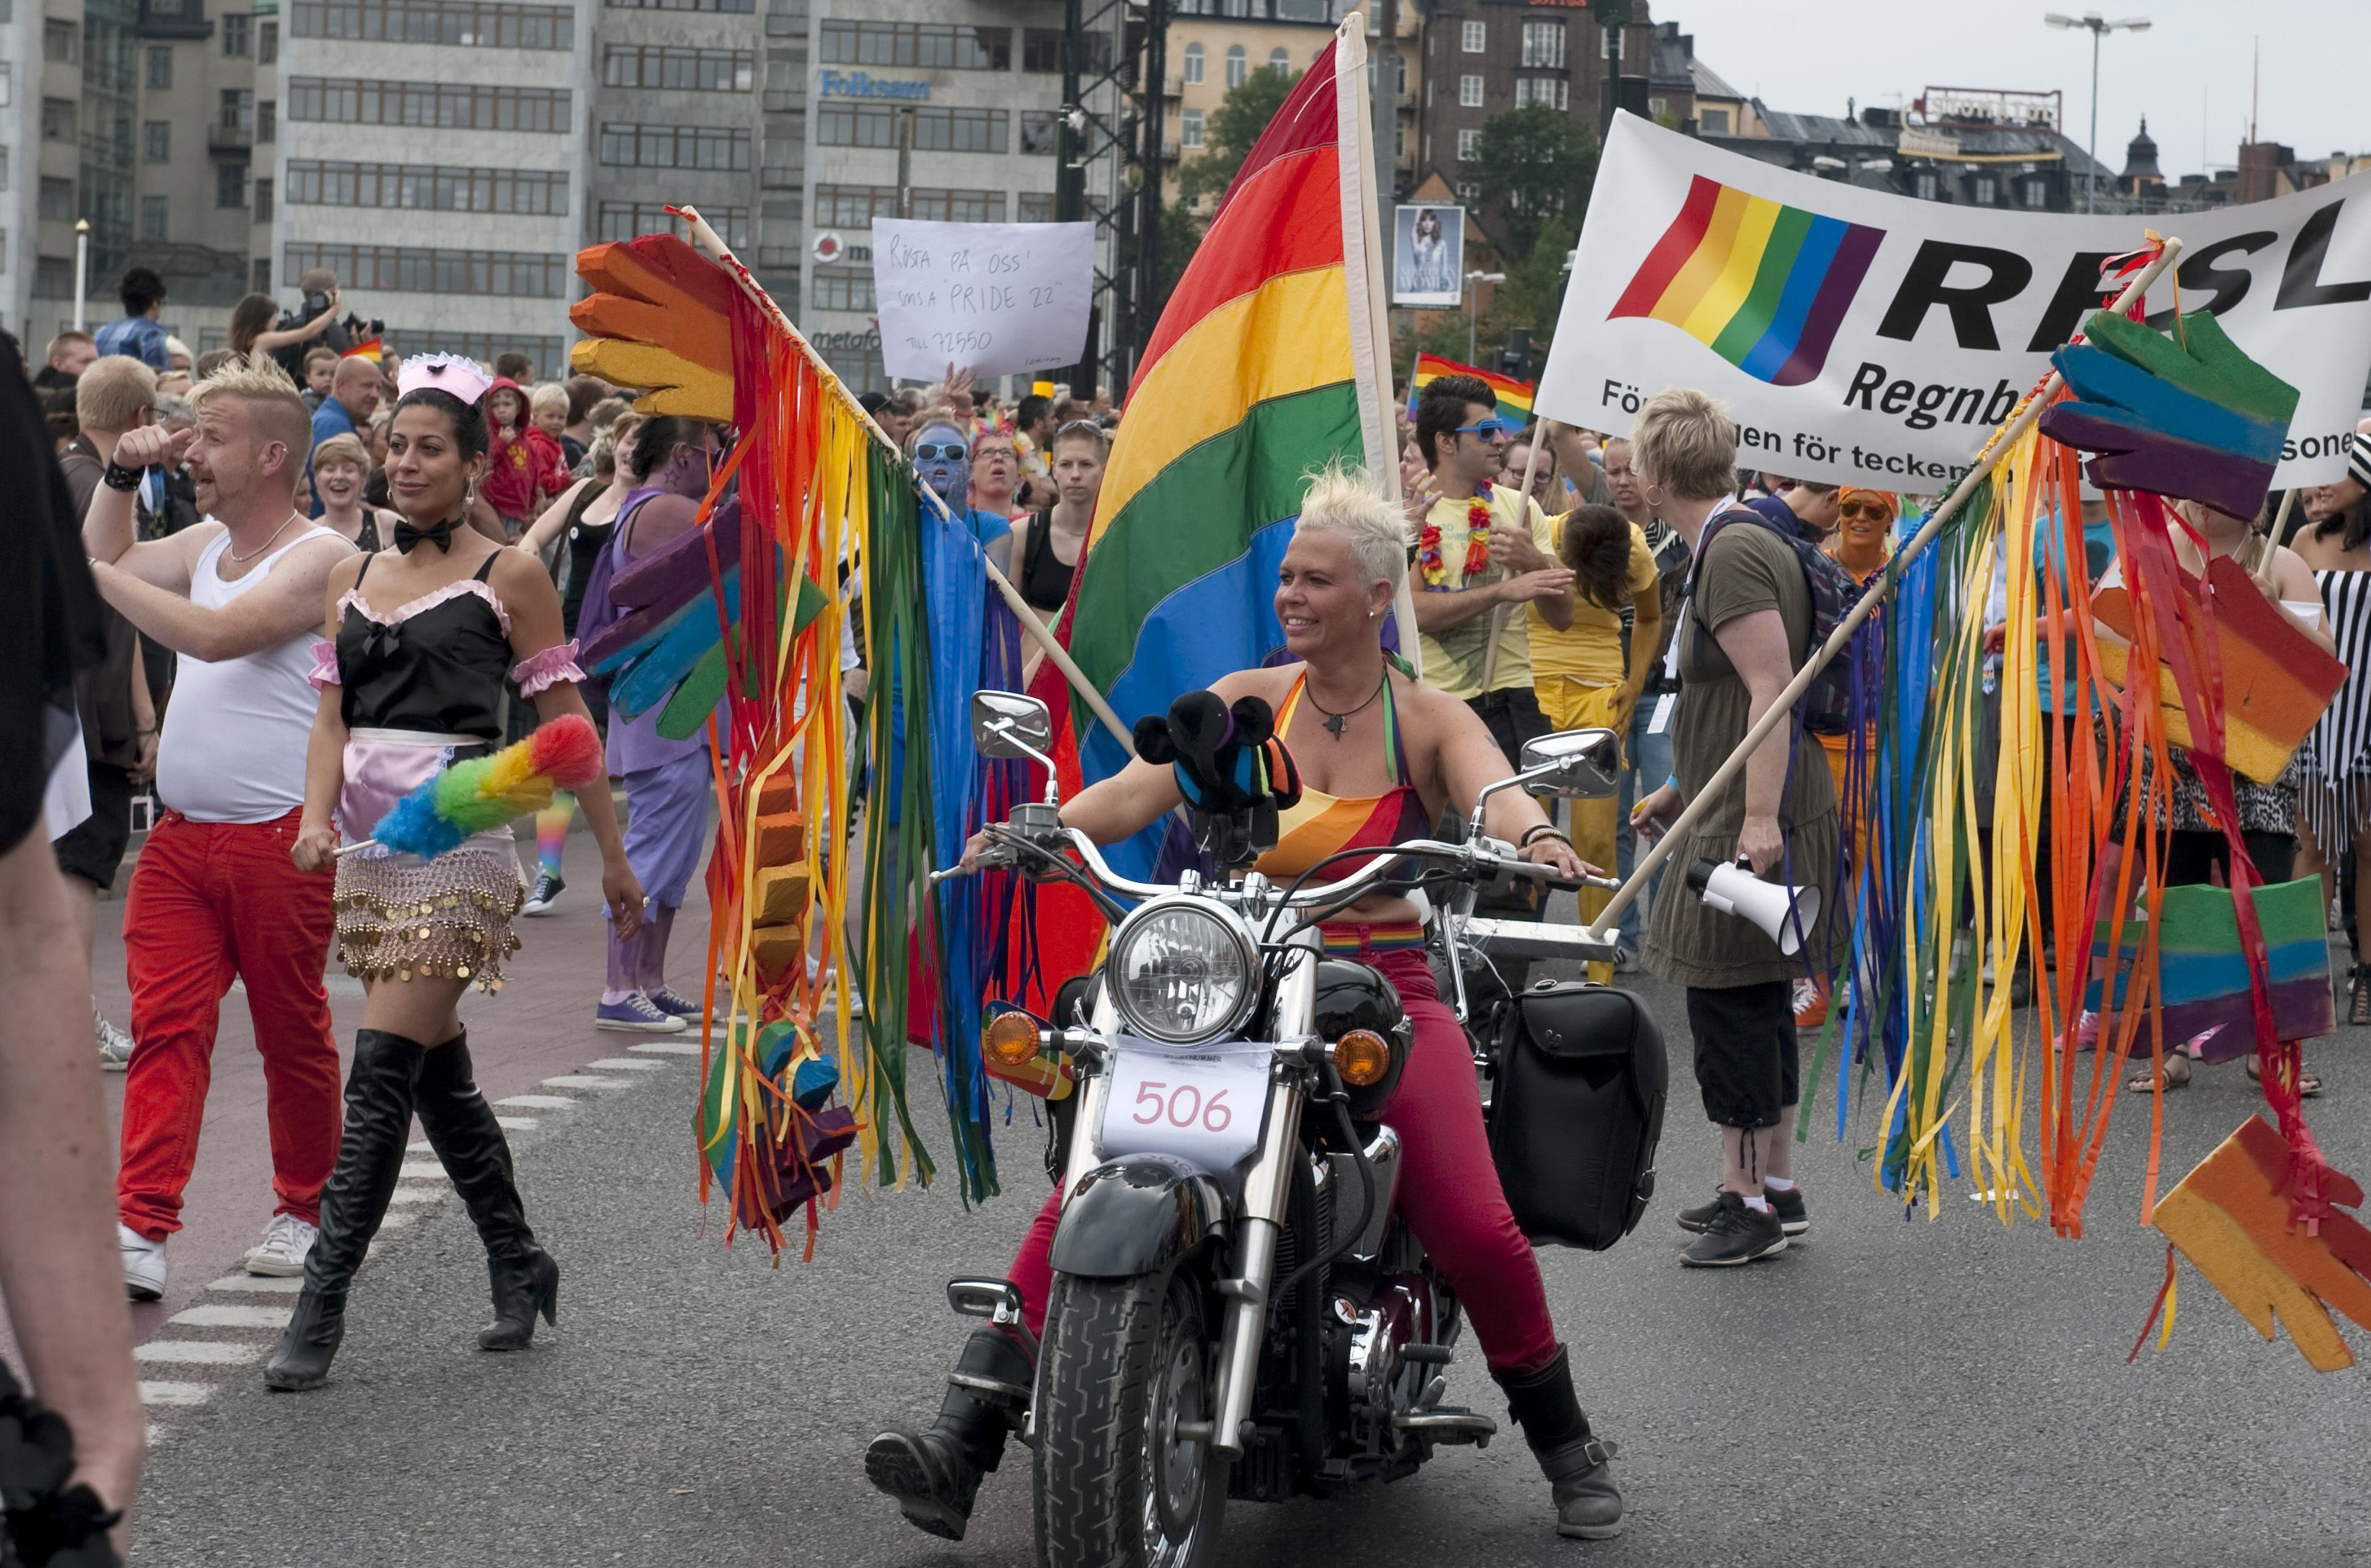 Kommunen spärrade en sida från Stockholms stad som hänvisar till klubbar och restauranger med gay-inriktning.